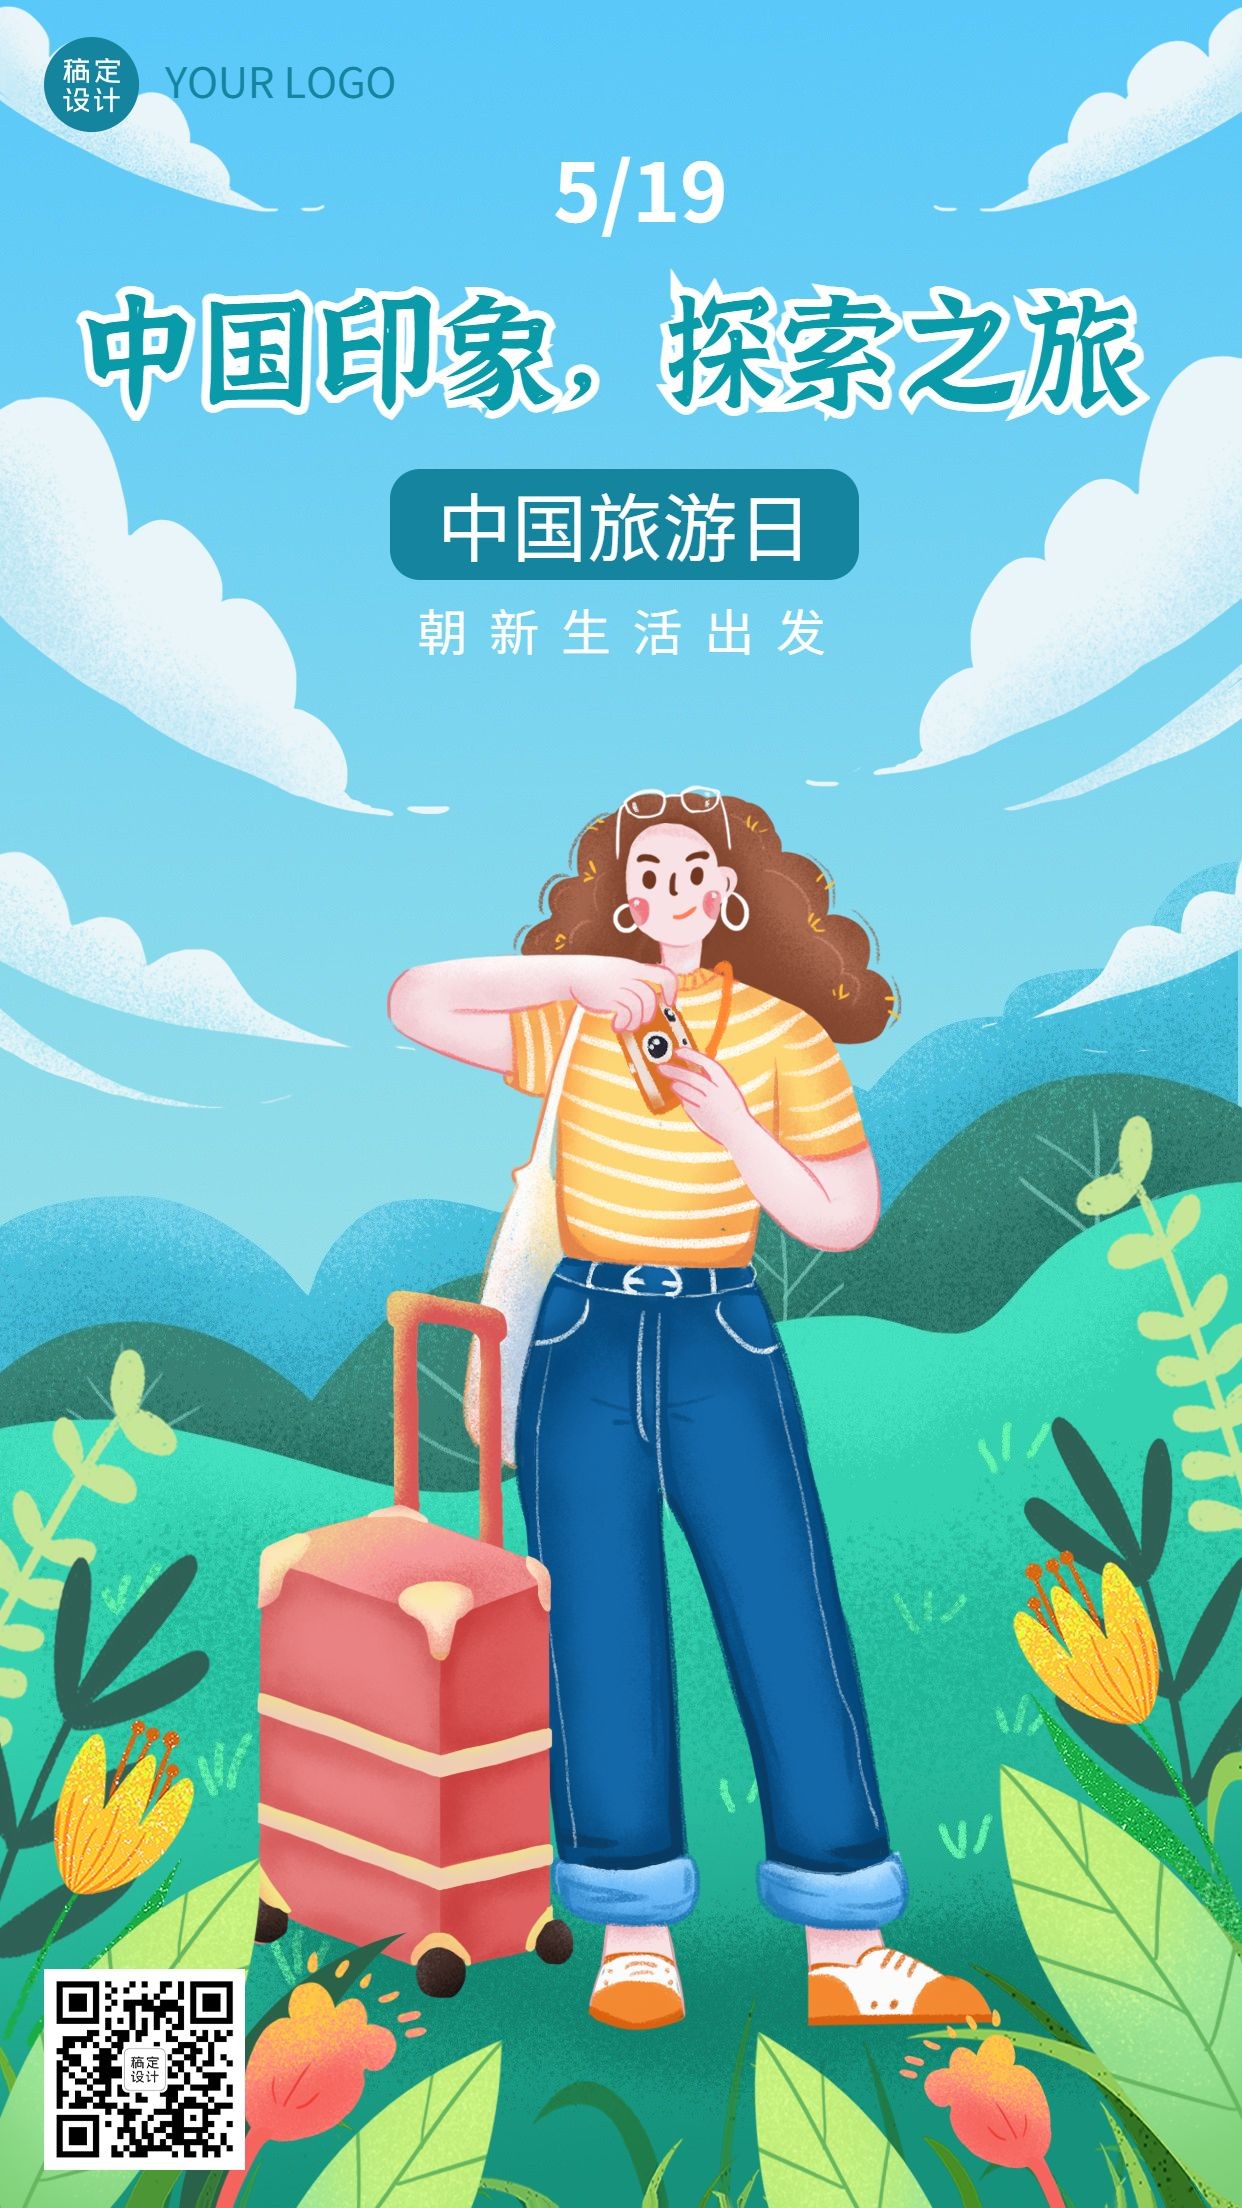 中国旅游日节日宣传手机海报预览效果